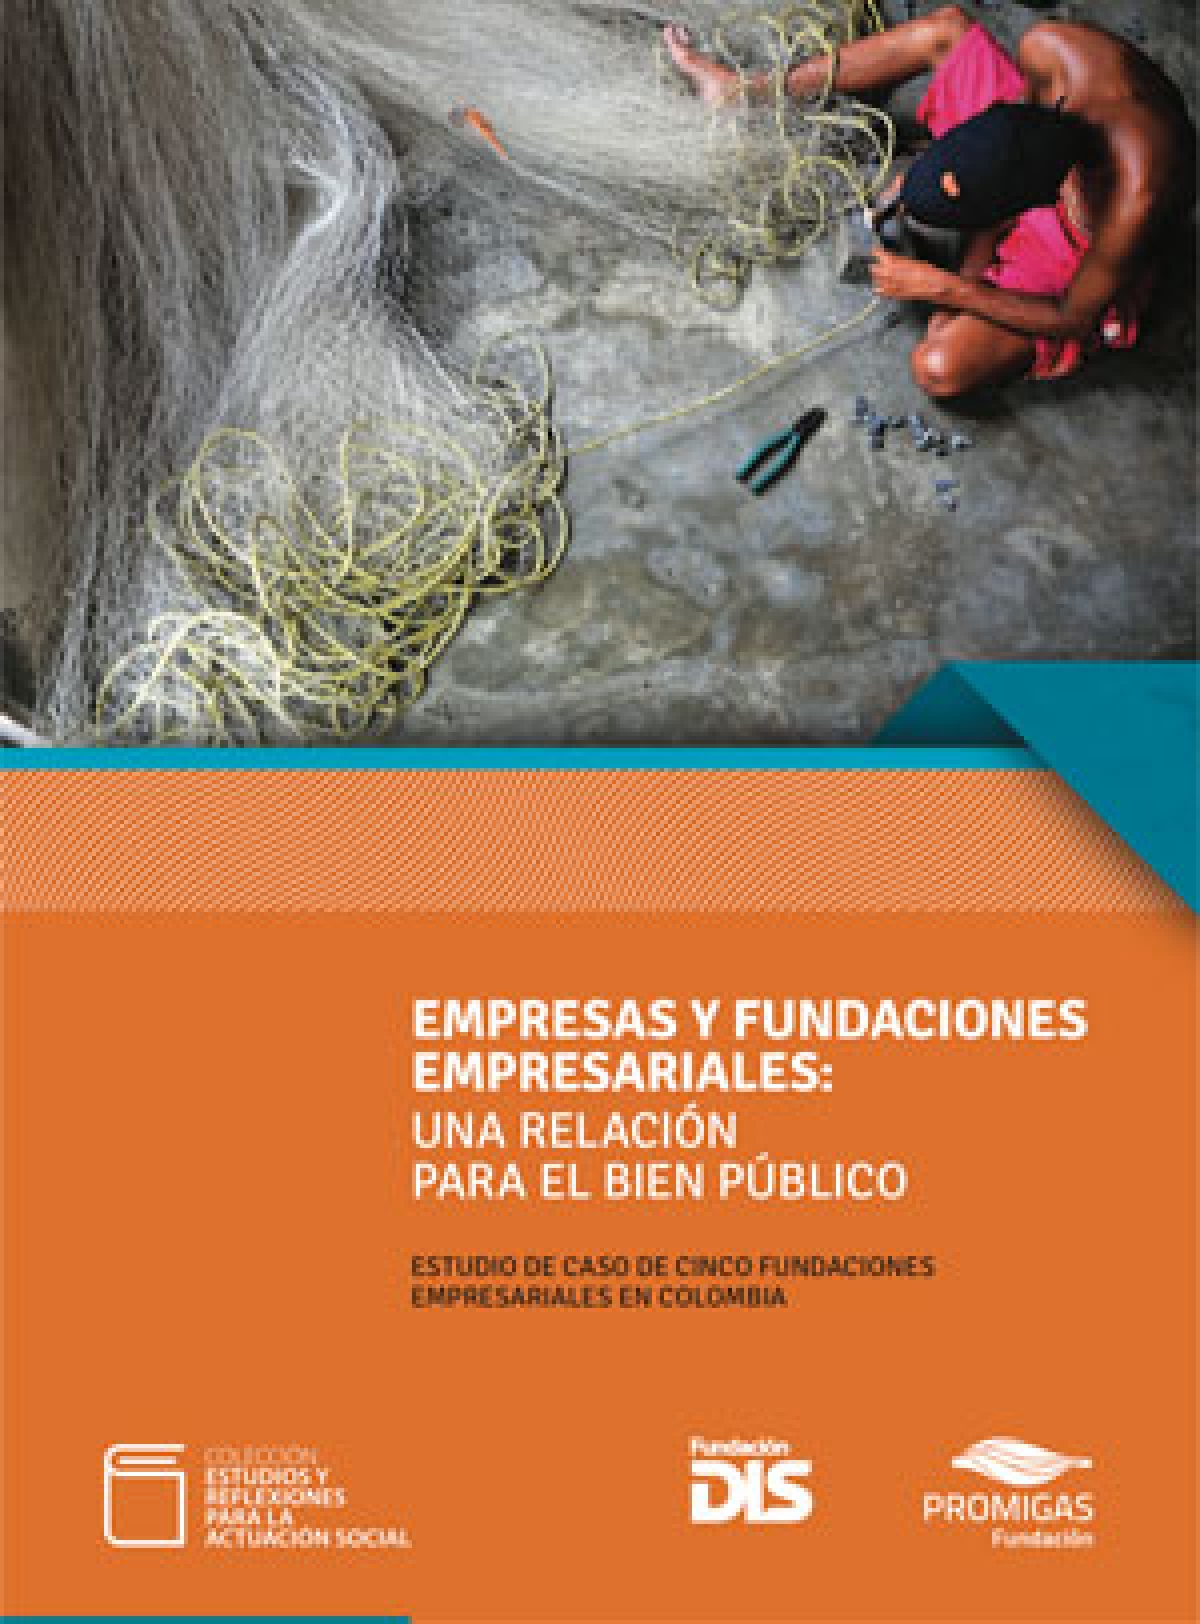 Empresas y fundaciones empresariales: Una relación para el bien público